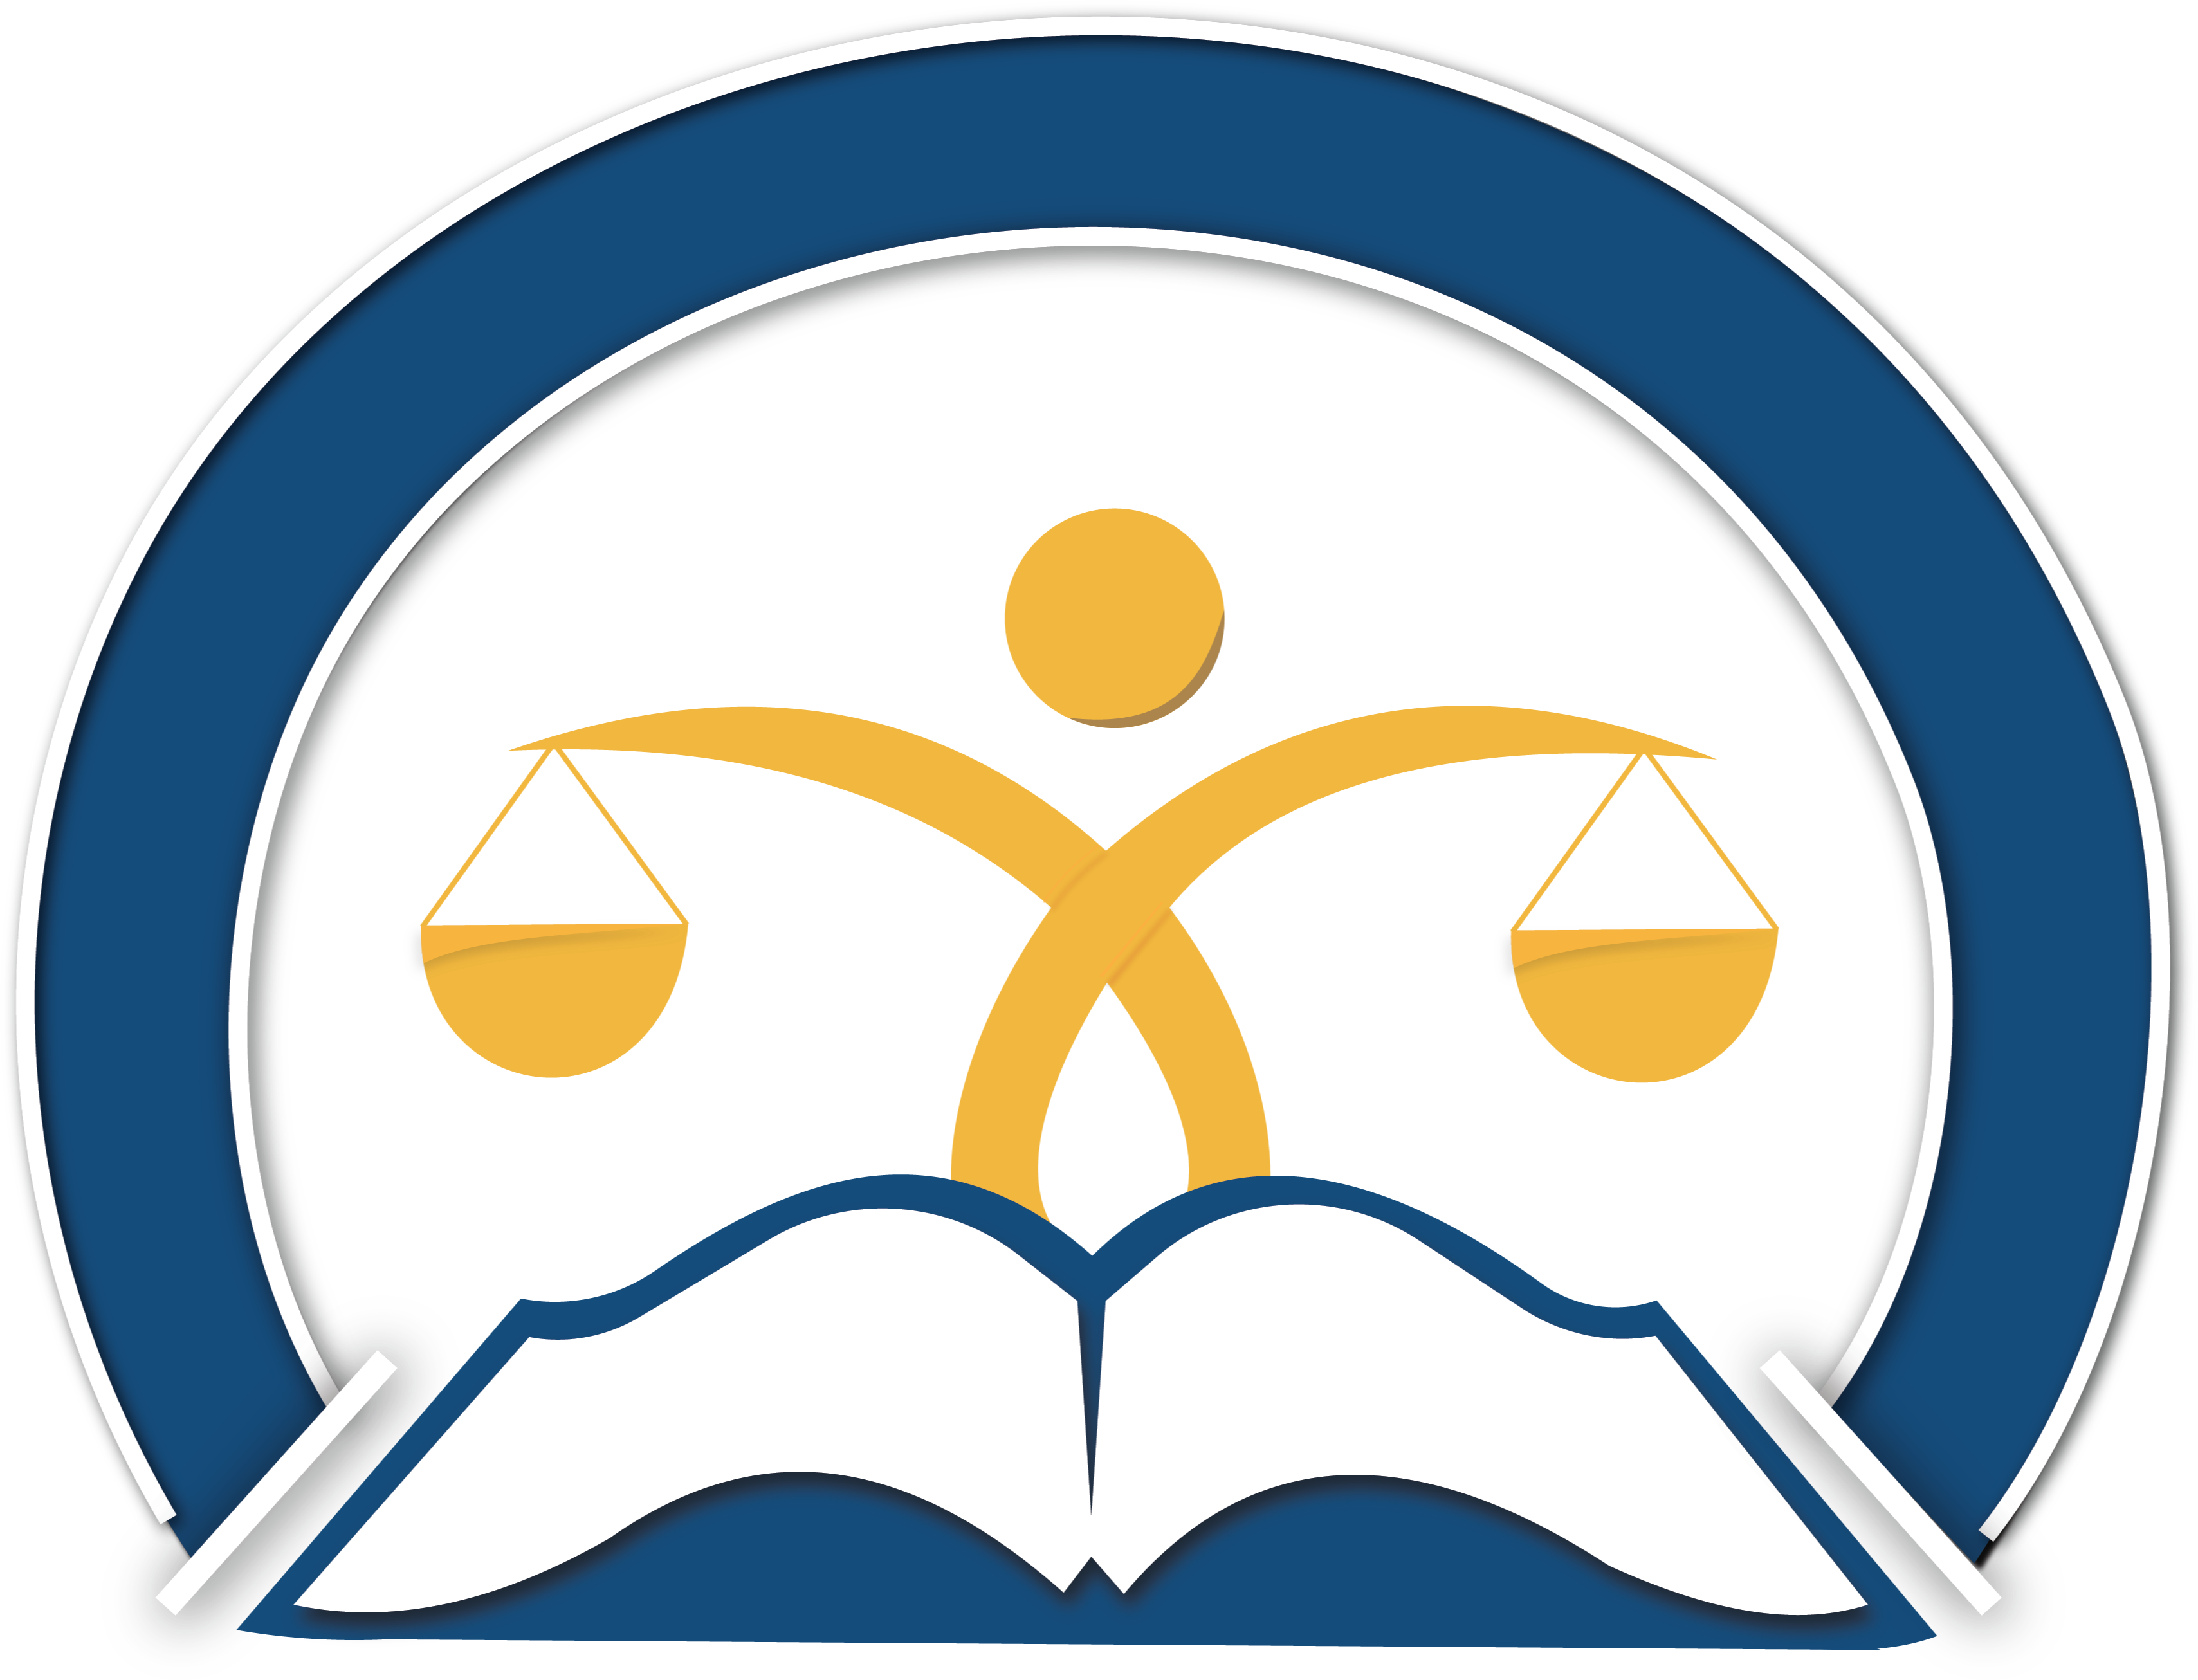 Institute for Jewish Ethics logo